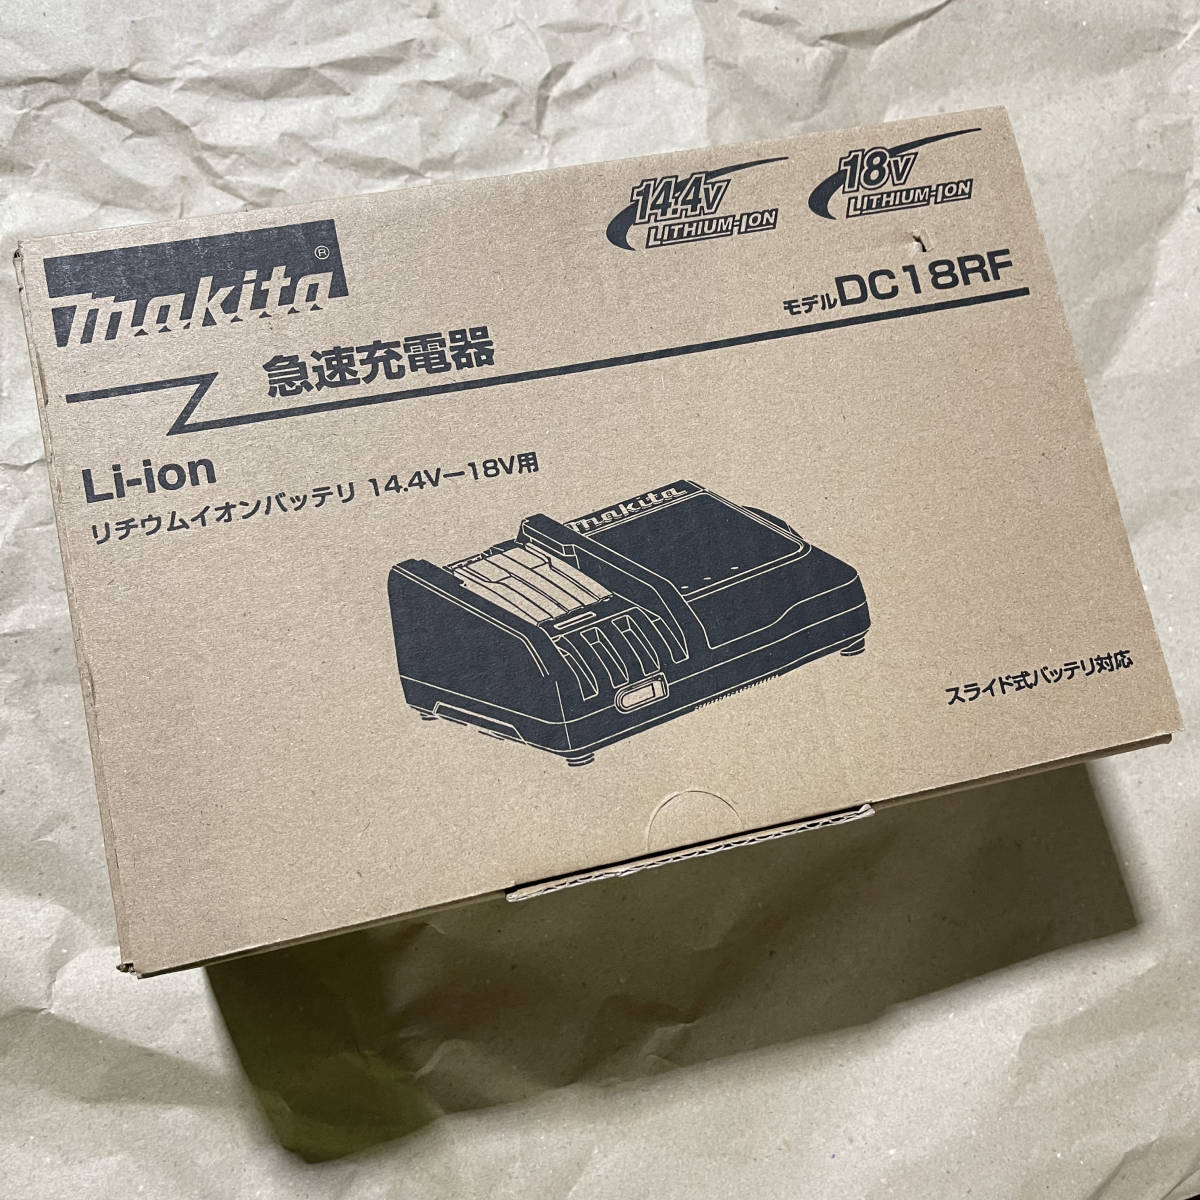 純正品 makita マキタ 急速充電器 DC18RF リチウムイオンバッテリー 14.4V-18V用 新品未開封 正規品